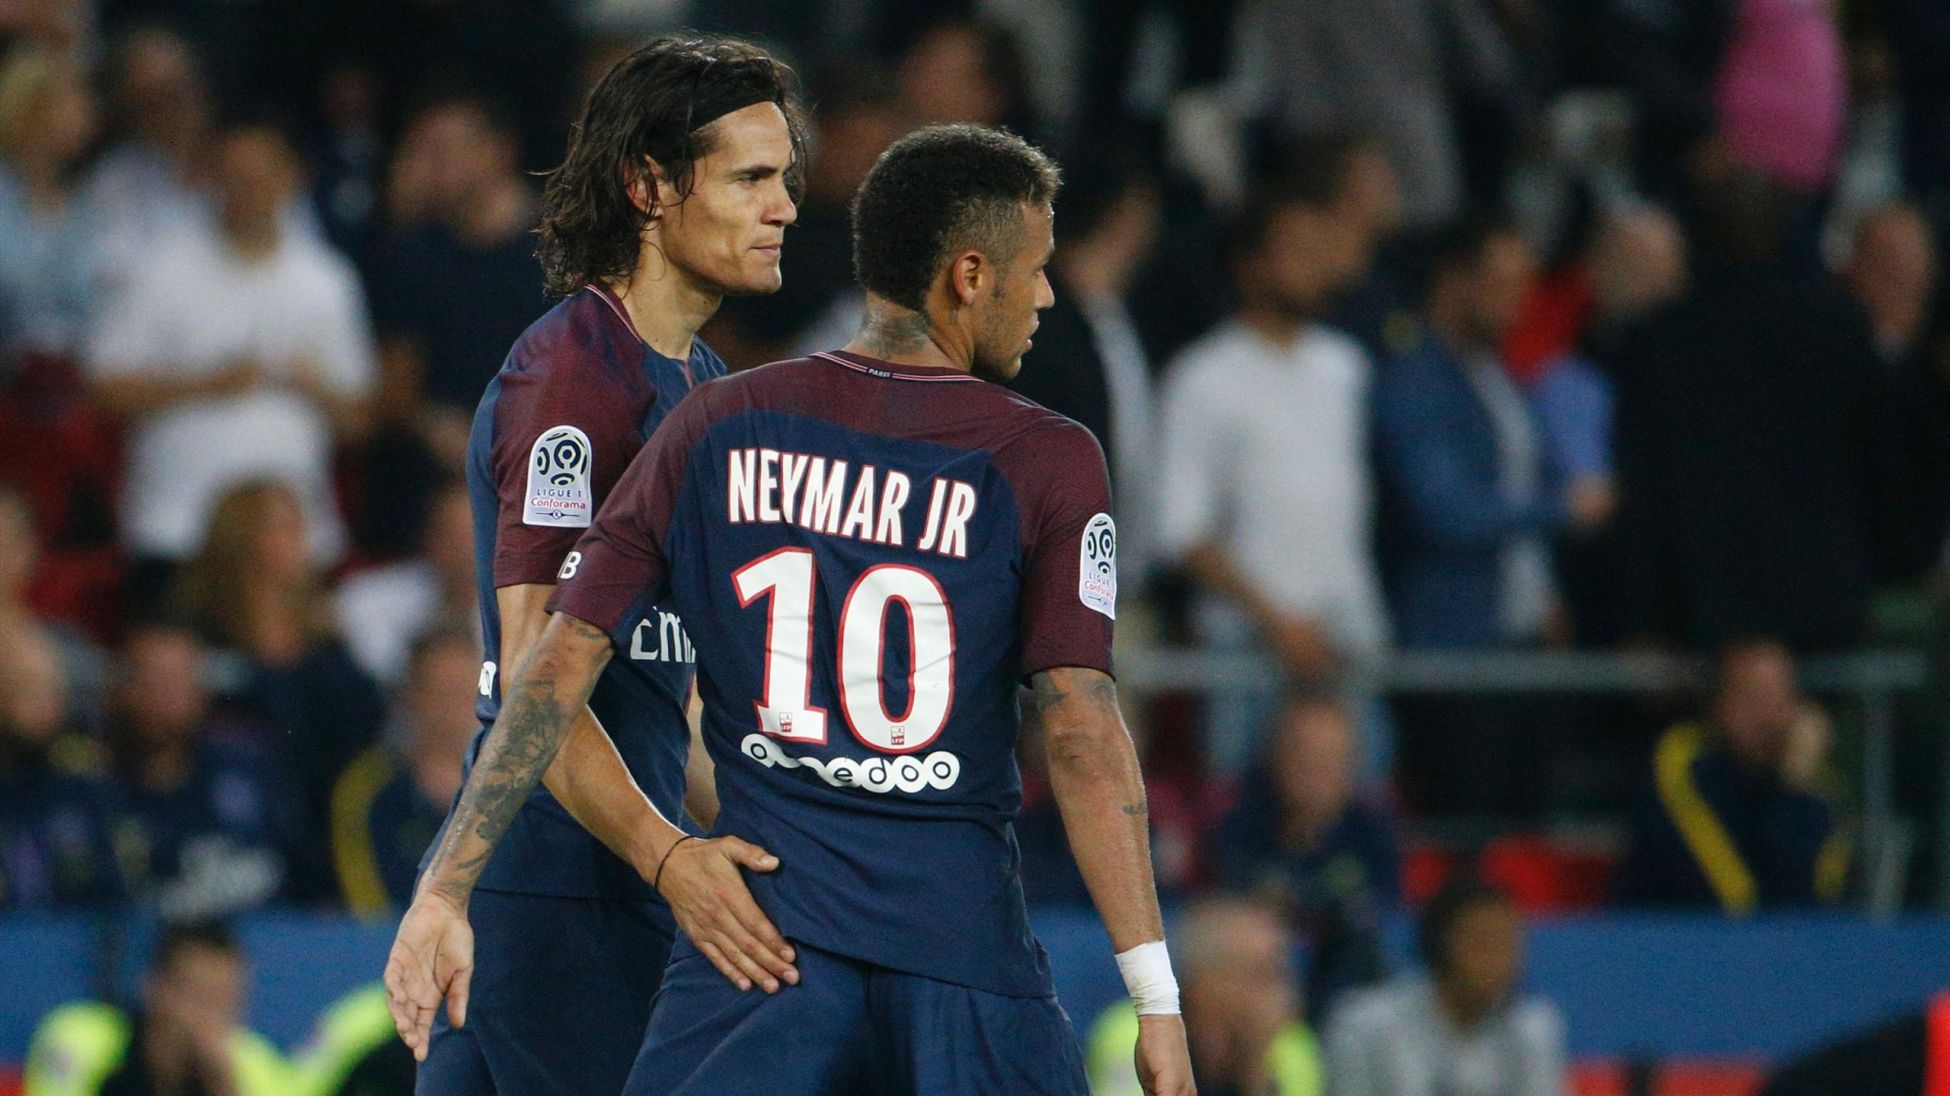 Neymar et Cavani, une embrouille dans le vestiaire et une affaire de gros sous ? - Eurosport.fr